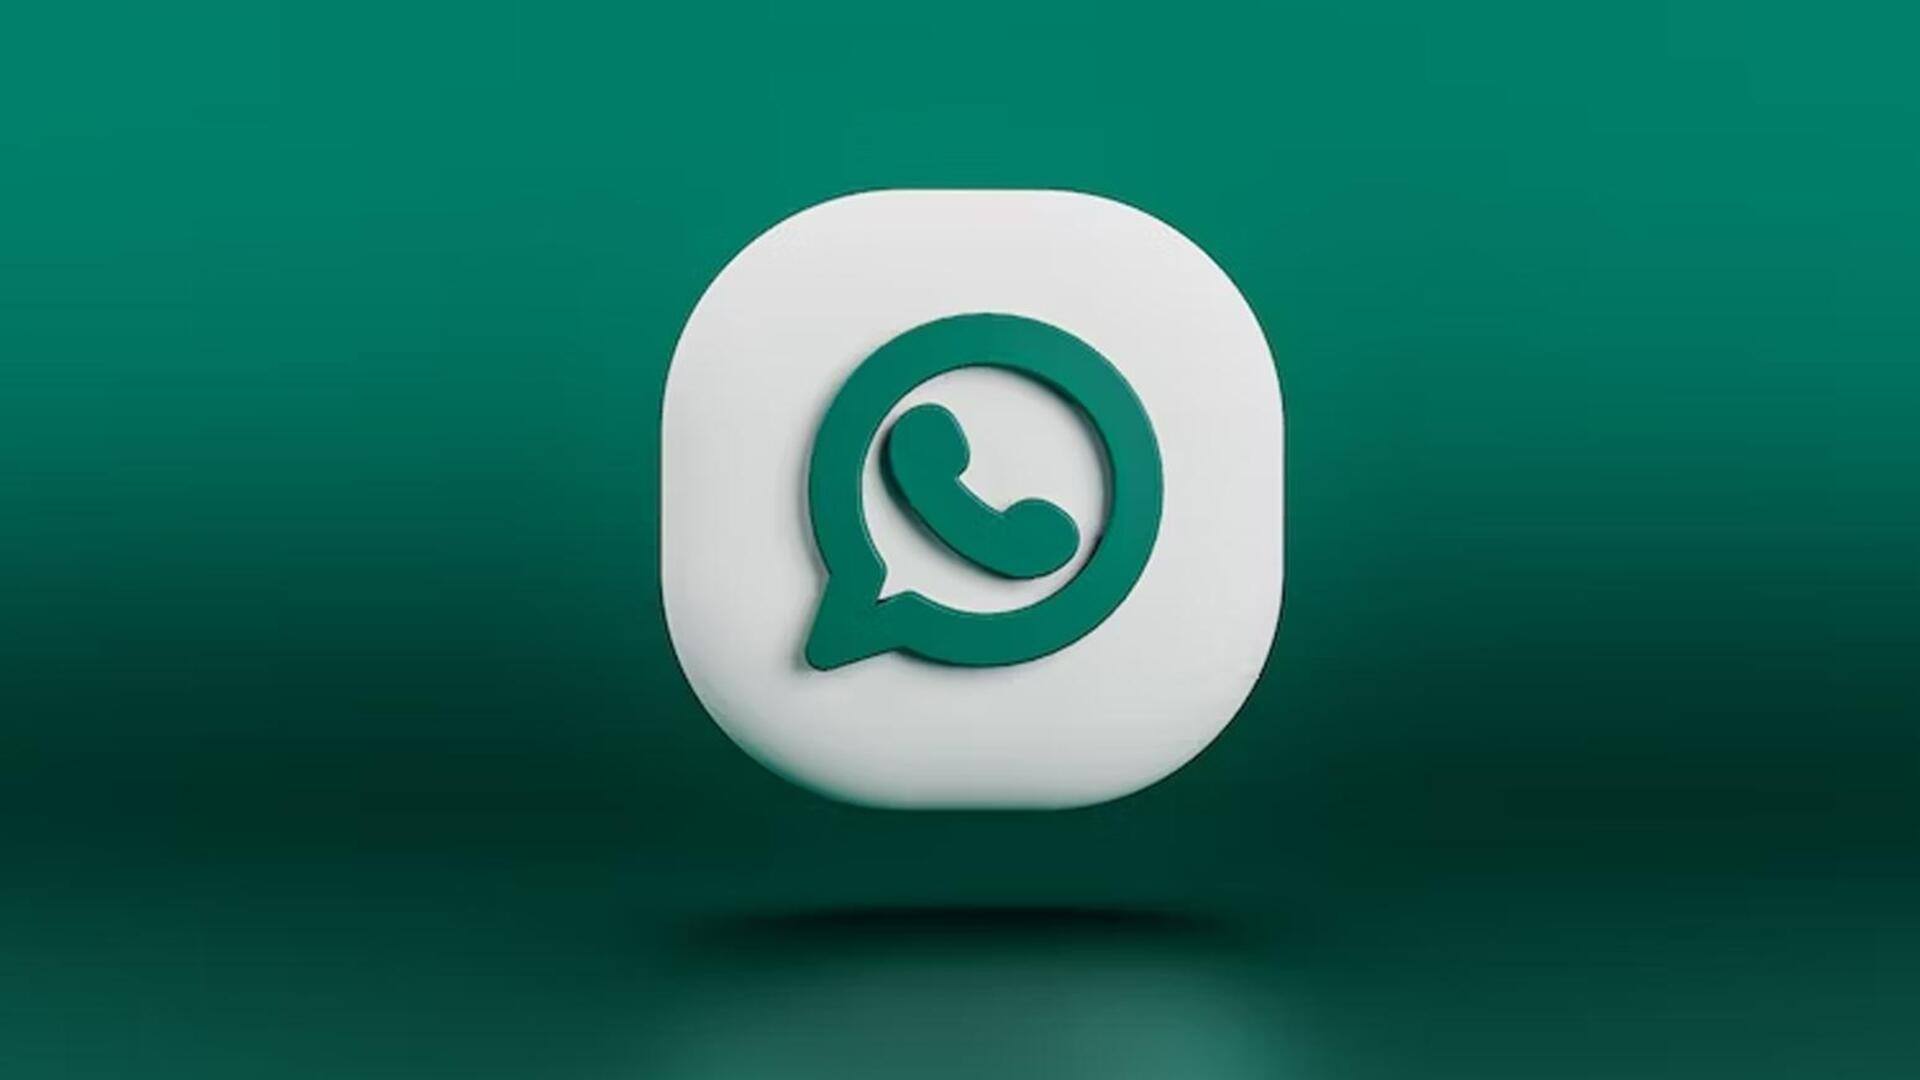 व्हाट्सऐप का नया फीचर: अब फोन नंबर के जरिये वेब से लिंक कर सकते हैं अकाउंट